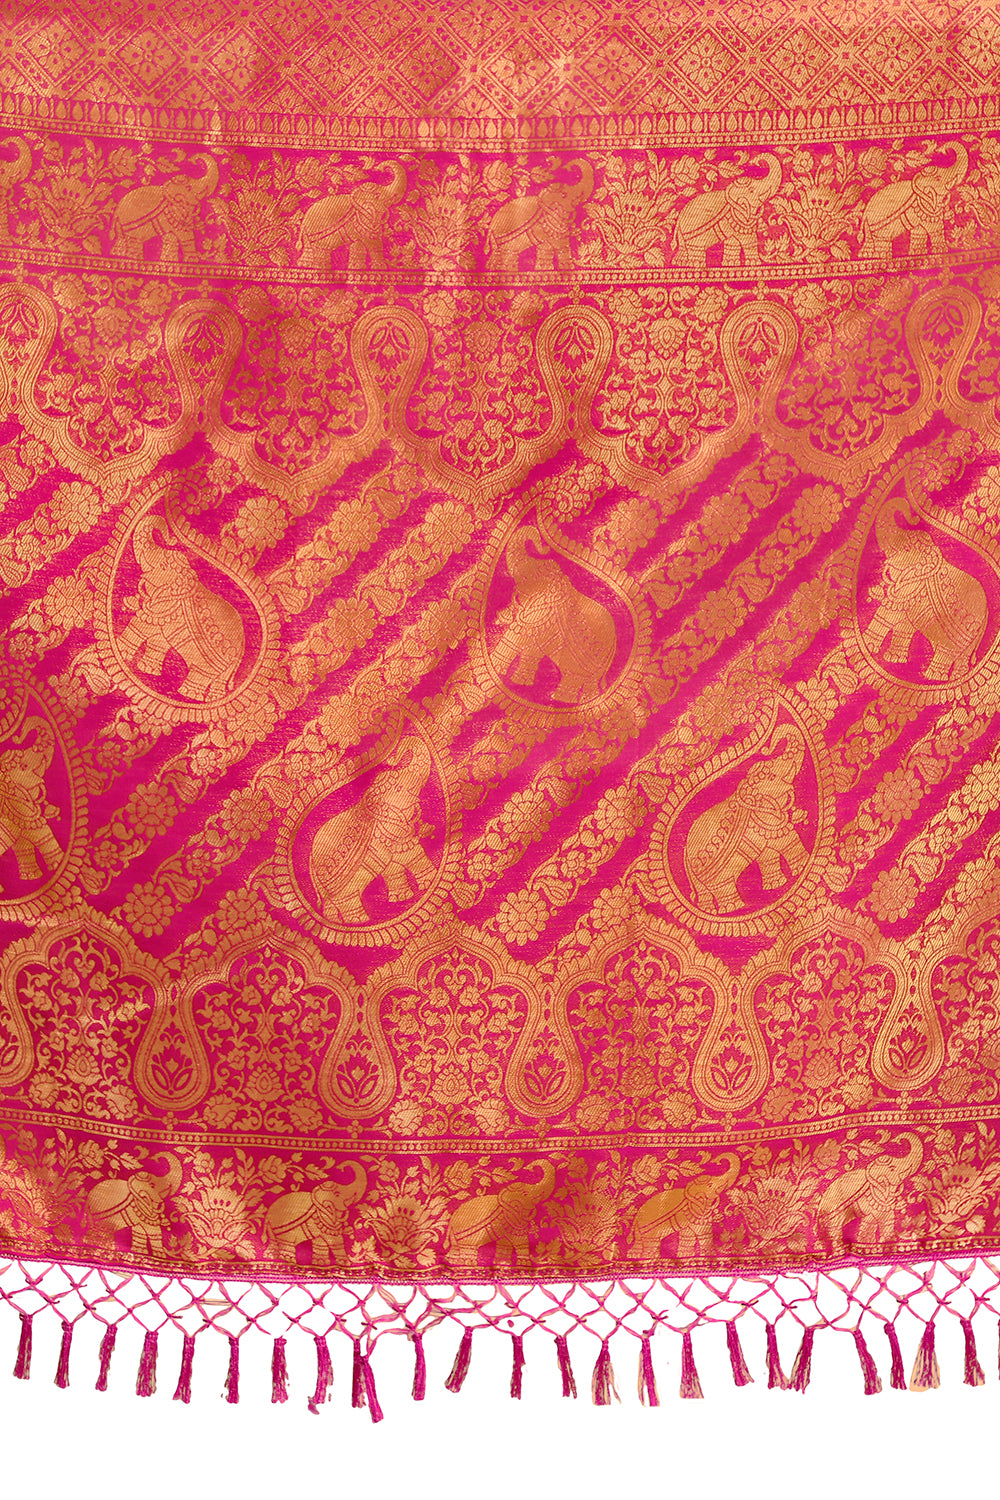 pink color banarasi silk saree buy now